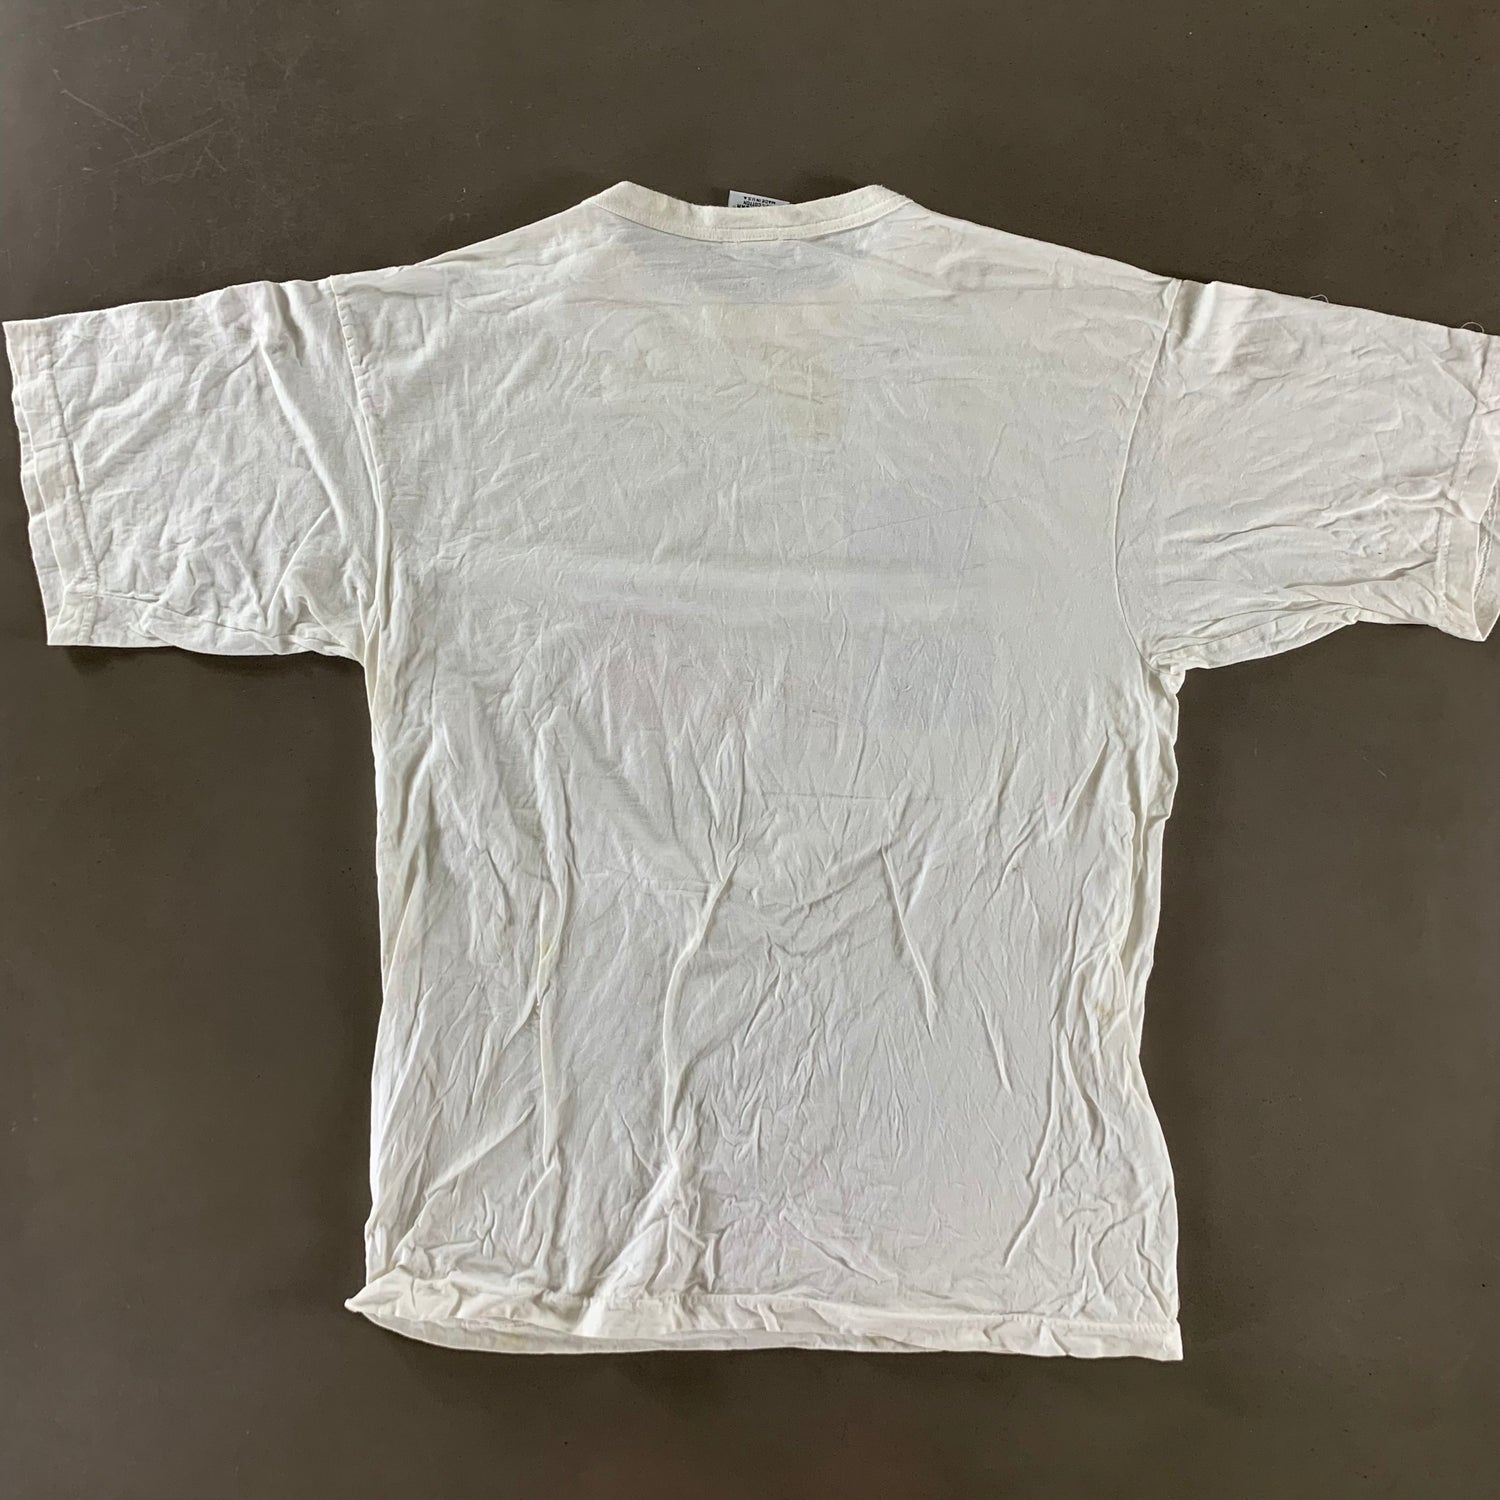 Vintage 1990s San Antonio Texas T-shirt size XL